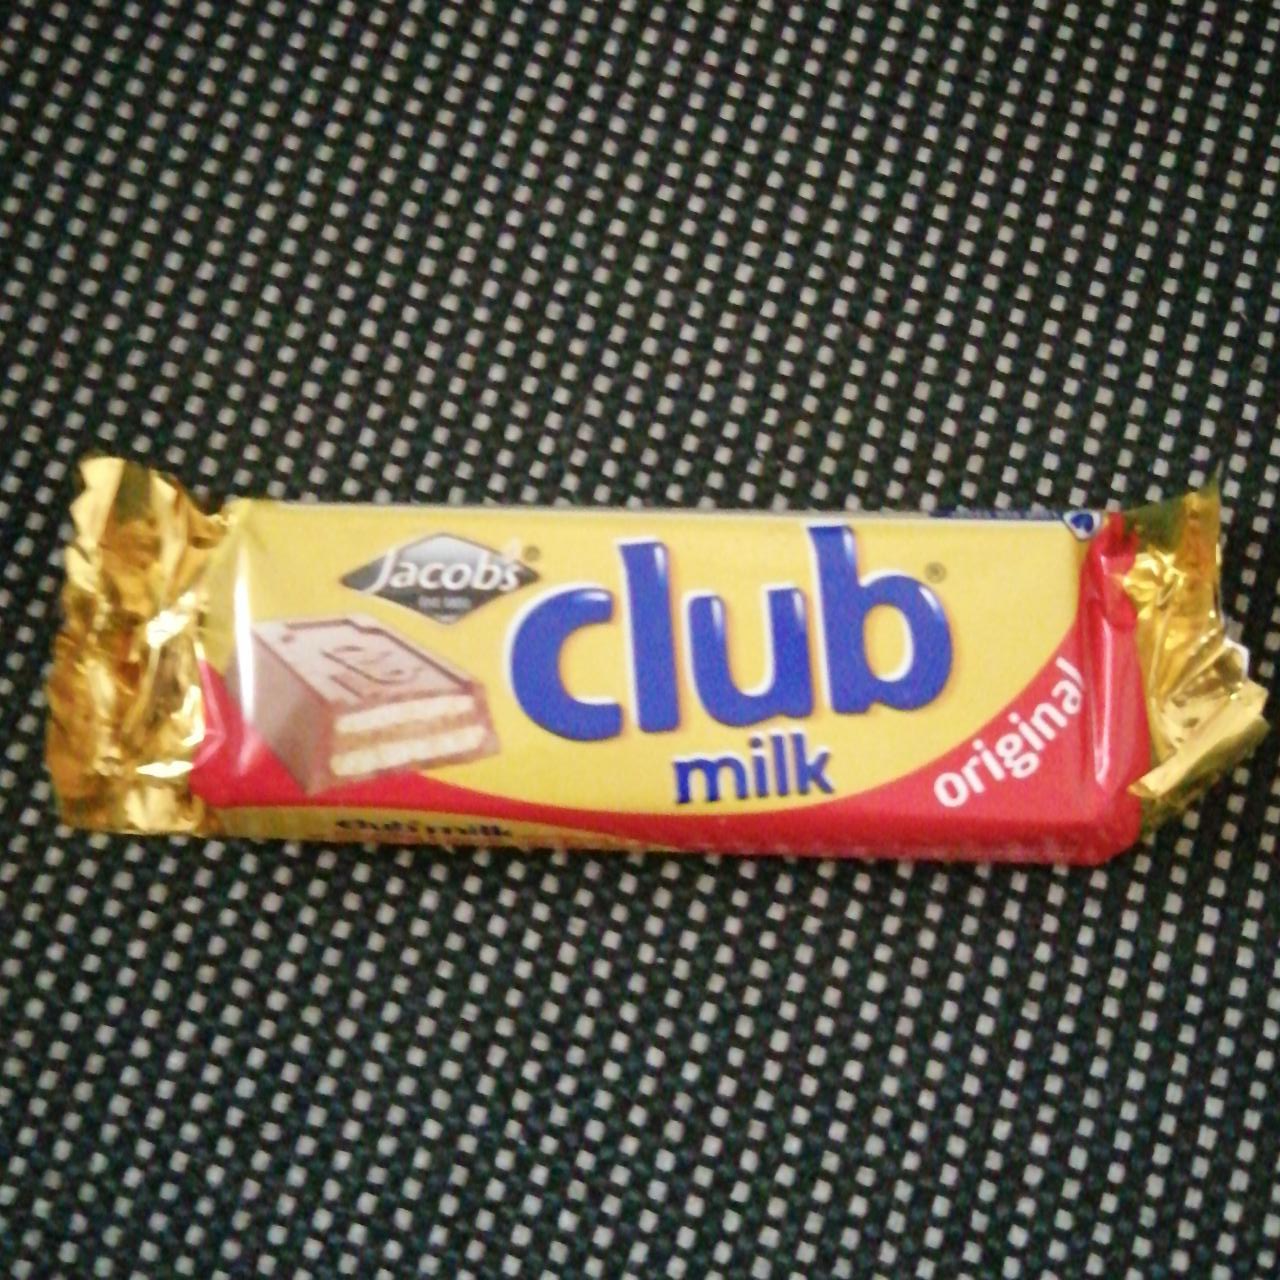 Фото - шоколадный батончик с начинкой Club milk Original Jacobs